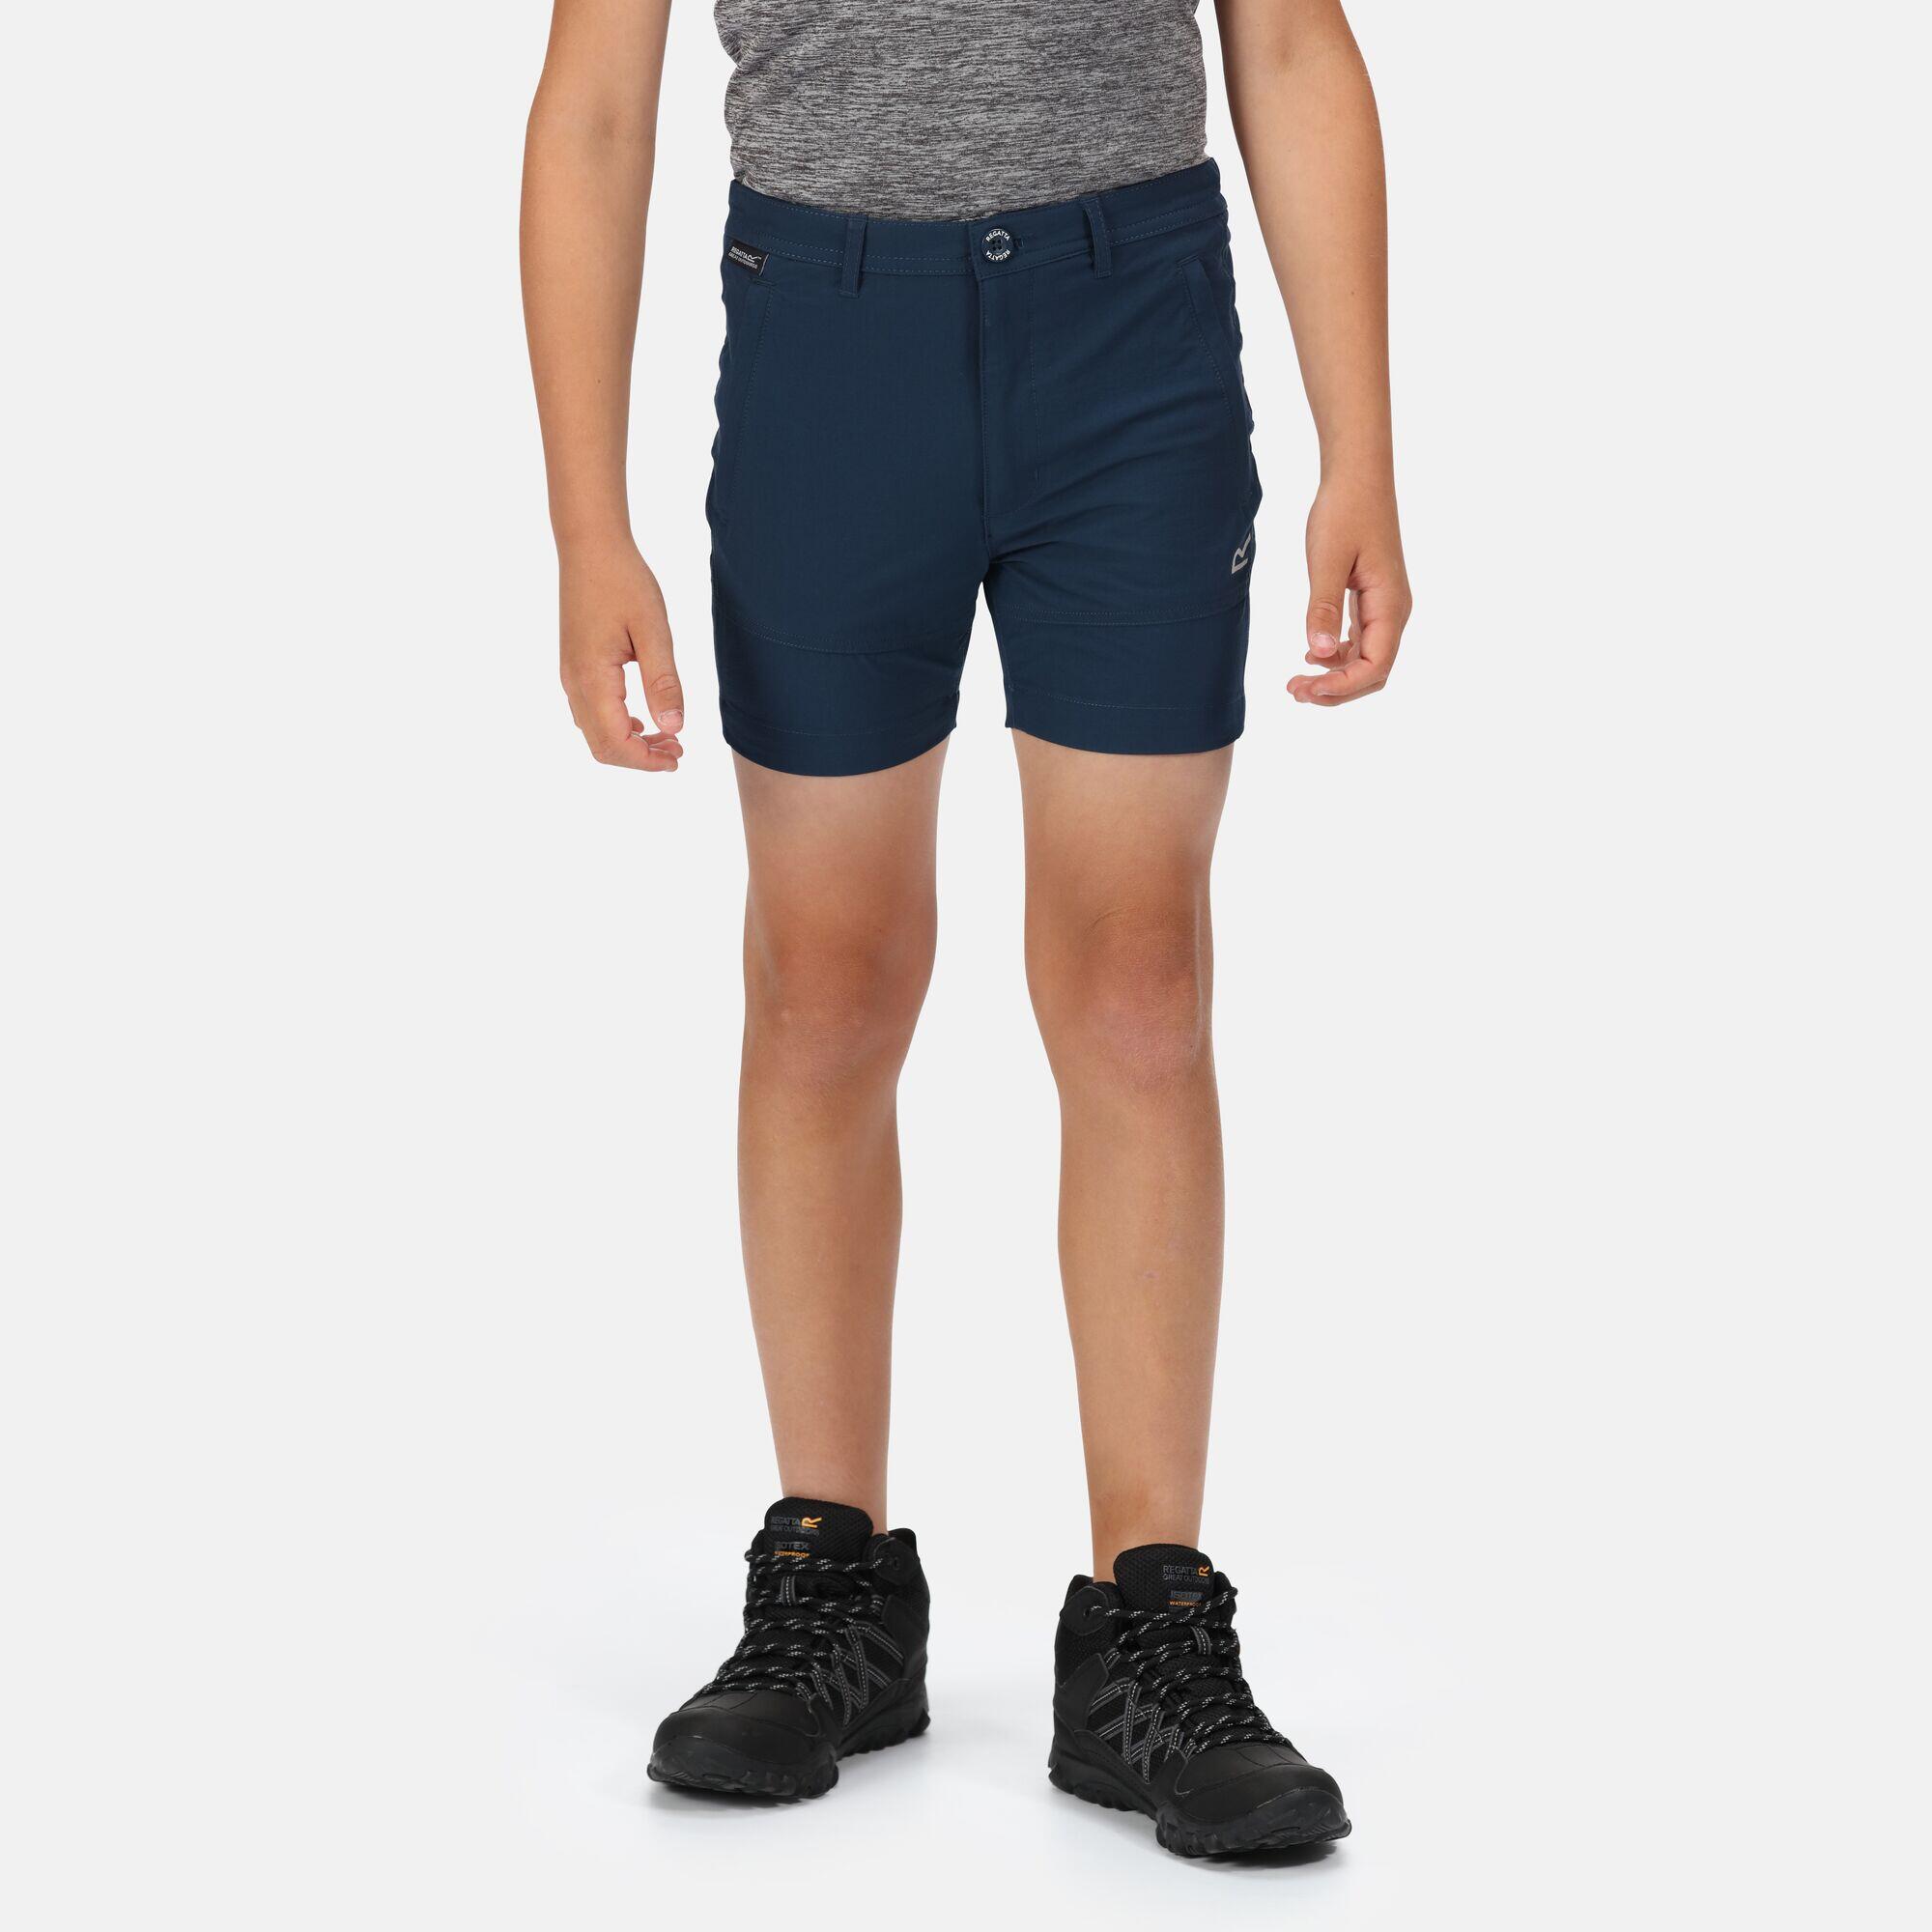 Highton Kids Walking Shorts - Moonlight Denim 1/2